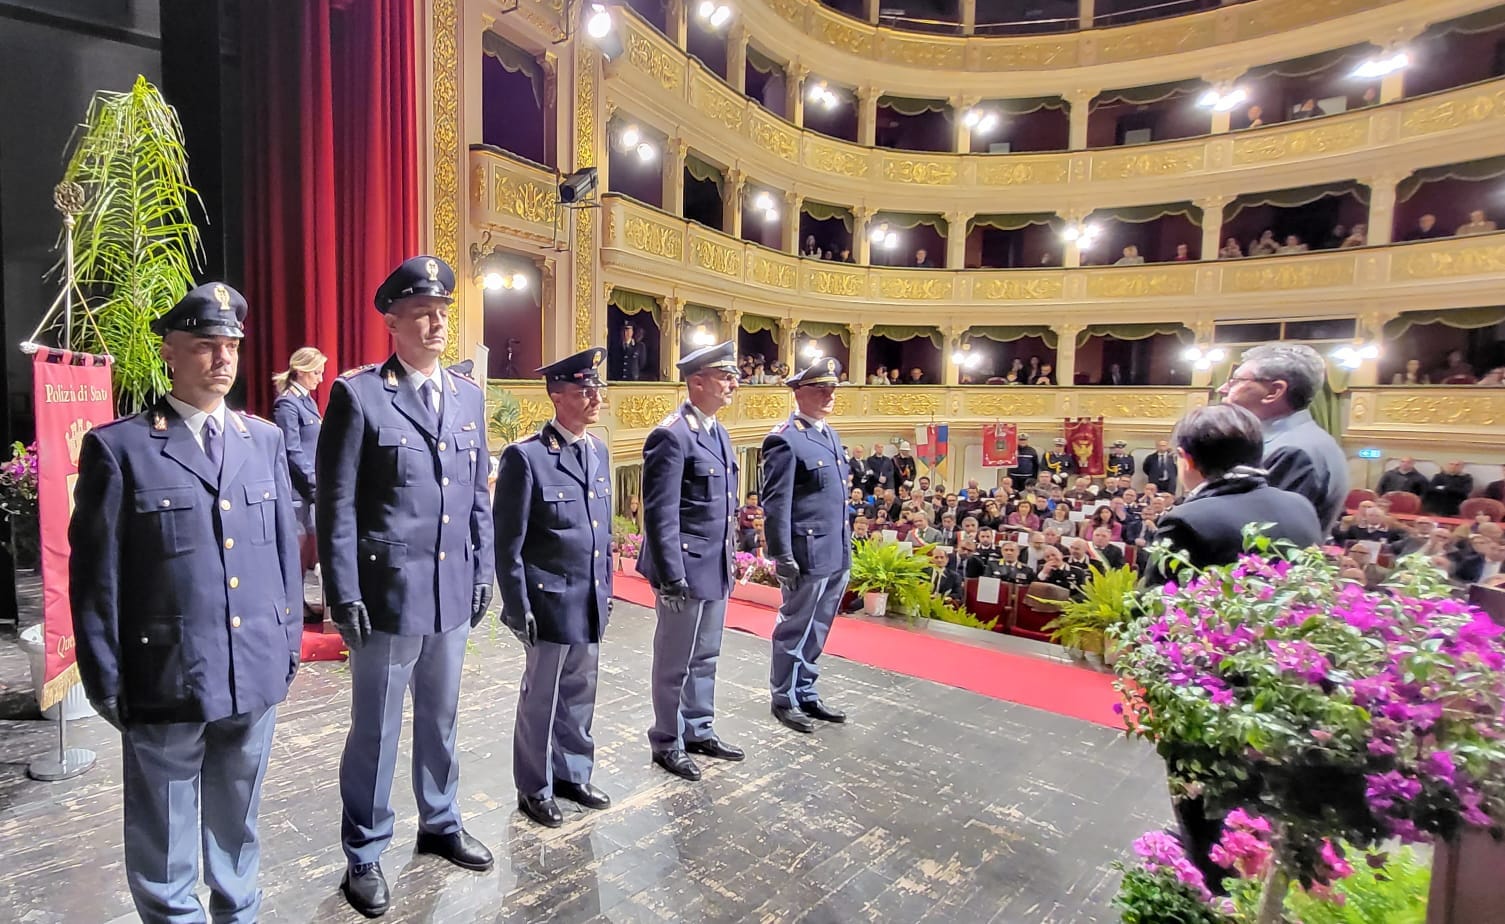 Caltanissetta. Ecco i poliziotti premiati in occasione del 171° anniversario di fondazione della Polizia di Stato